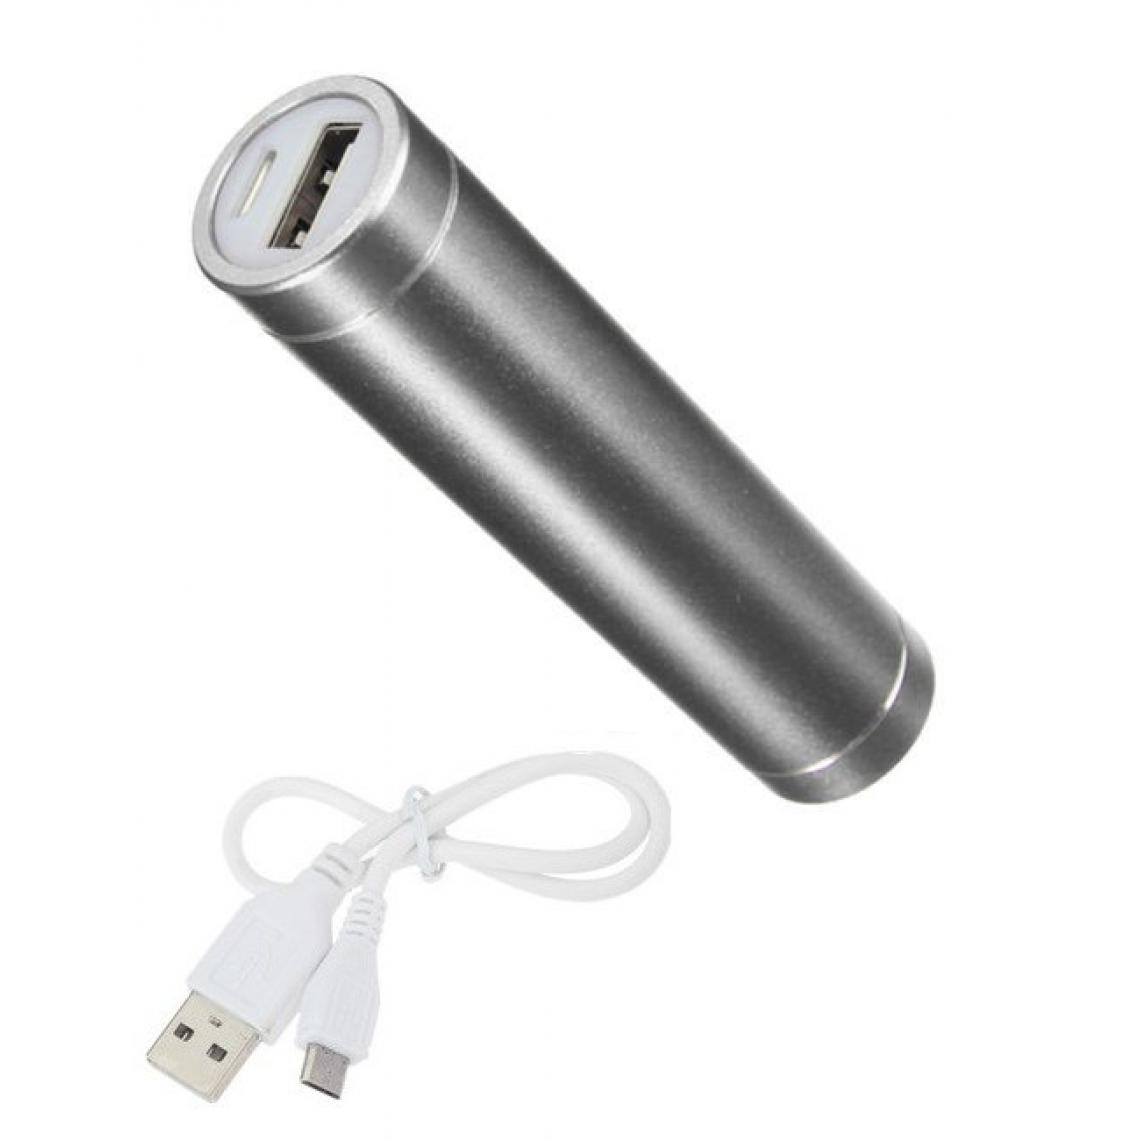 Shot - Batterie Chargeur Externe pour BLACKBERRY KEY2 LE Power Bank 2600mAh avec Cable USB/Mirco USB Secours Telephone (ARGENT) - Chargeur secteur téléphone